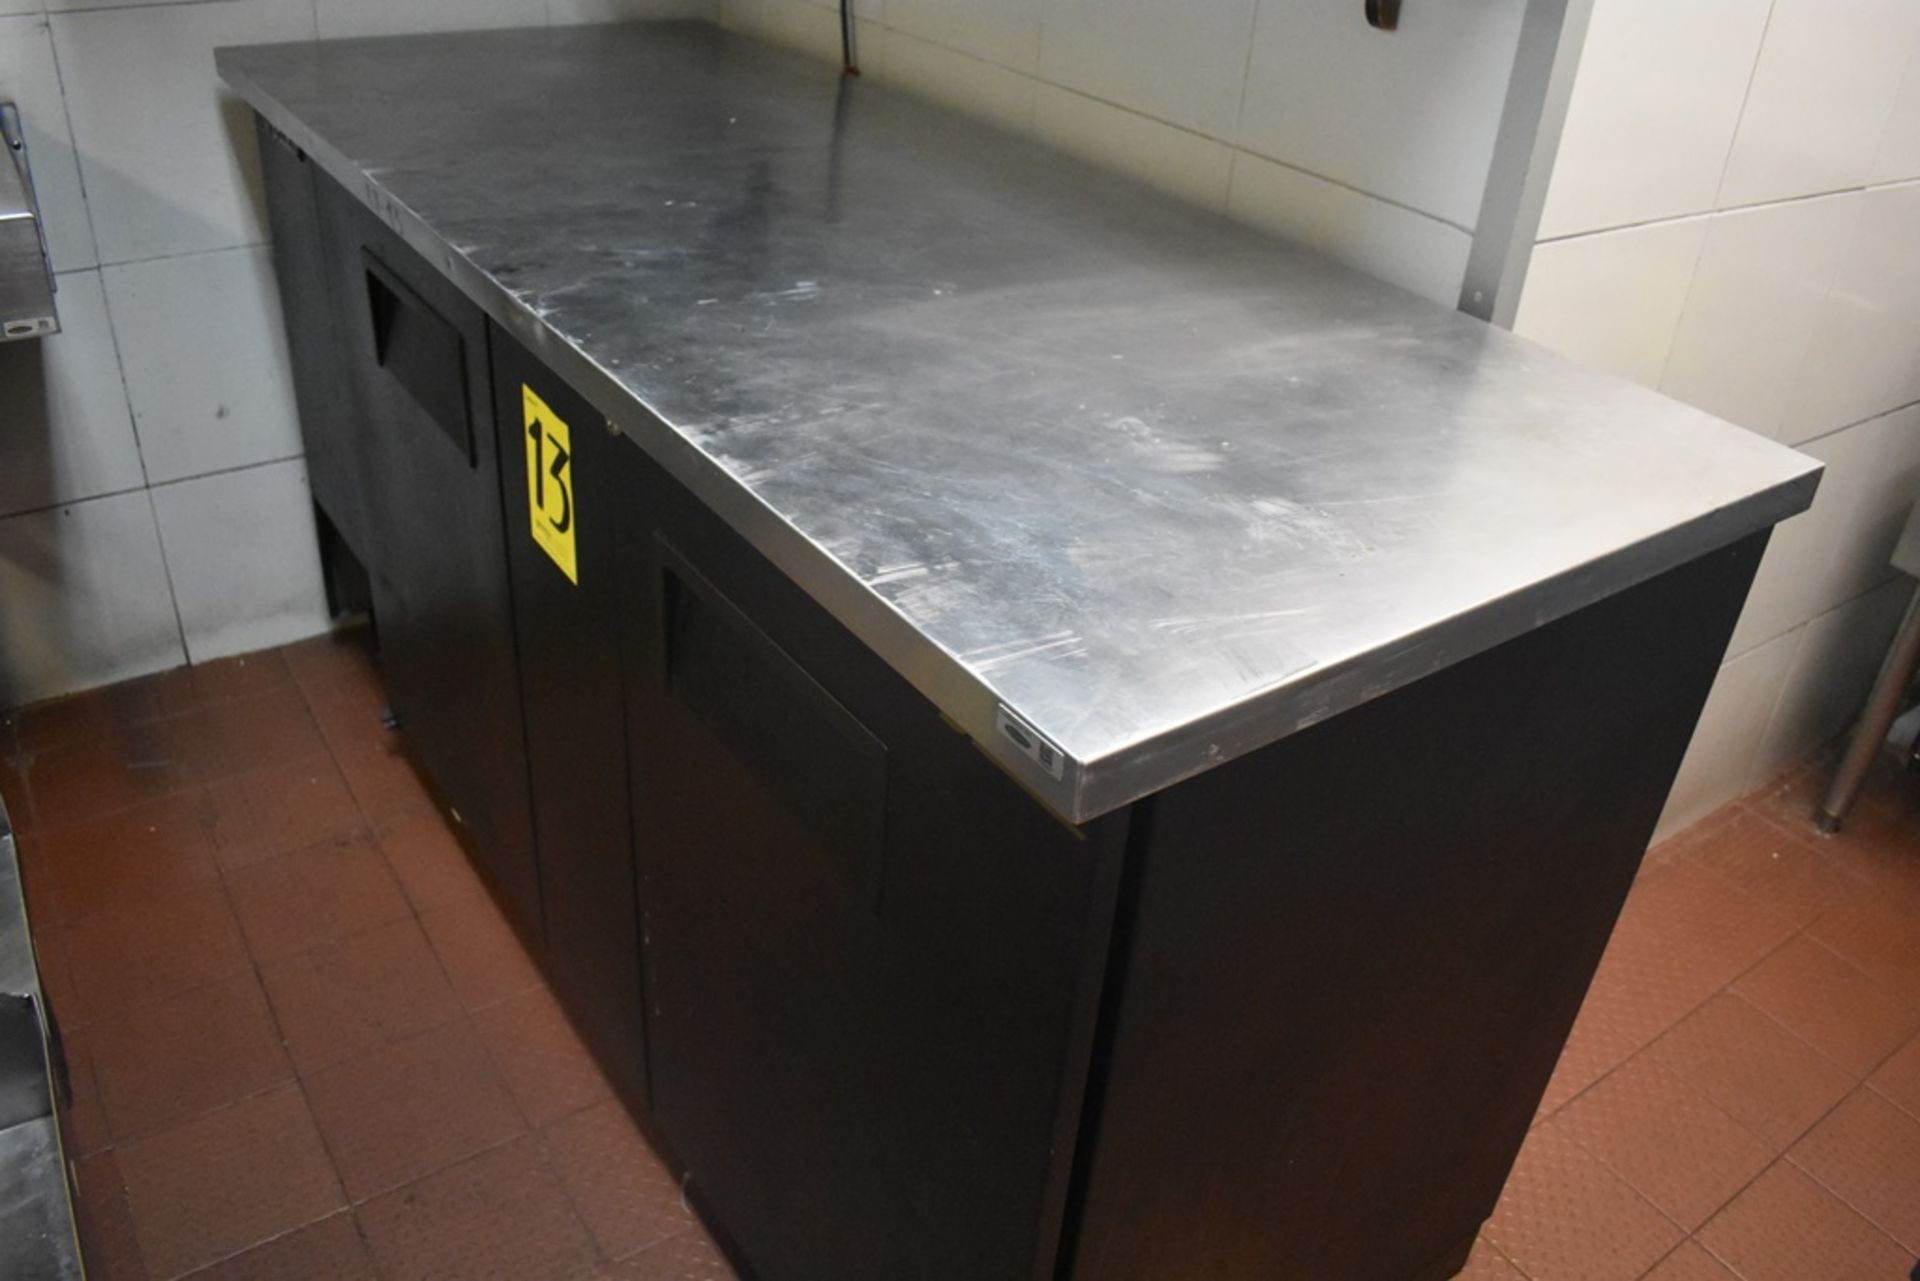 Mesa de trabajo refrigerada con cubierta en acero inoxidable marca True, modelo TBB-3, número de se - Image 3 of 20